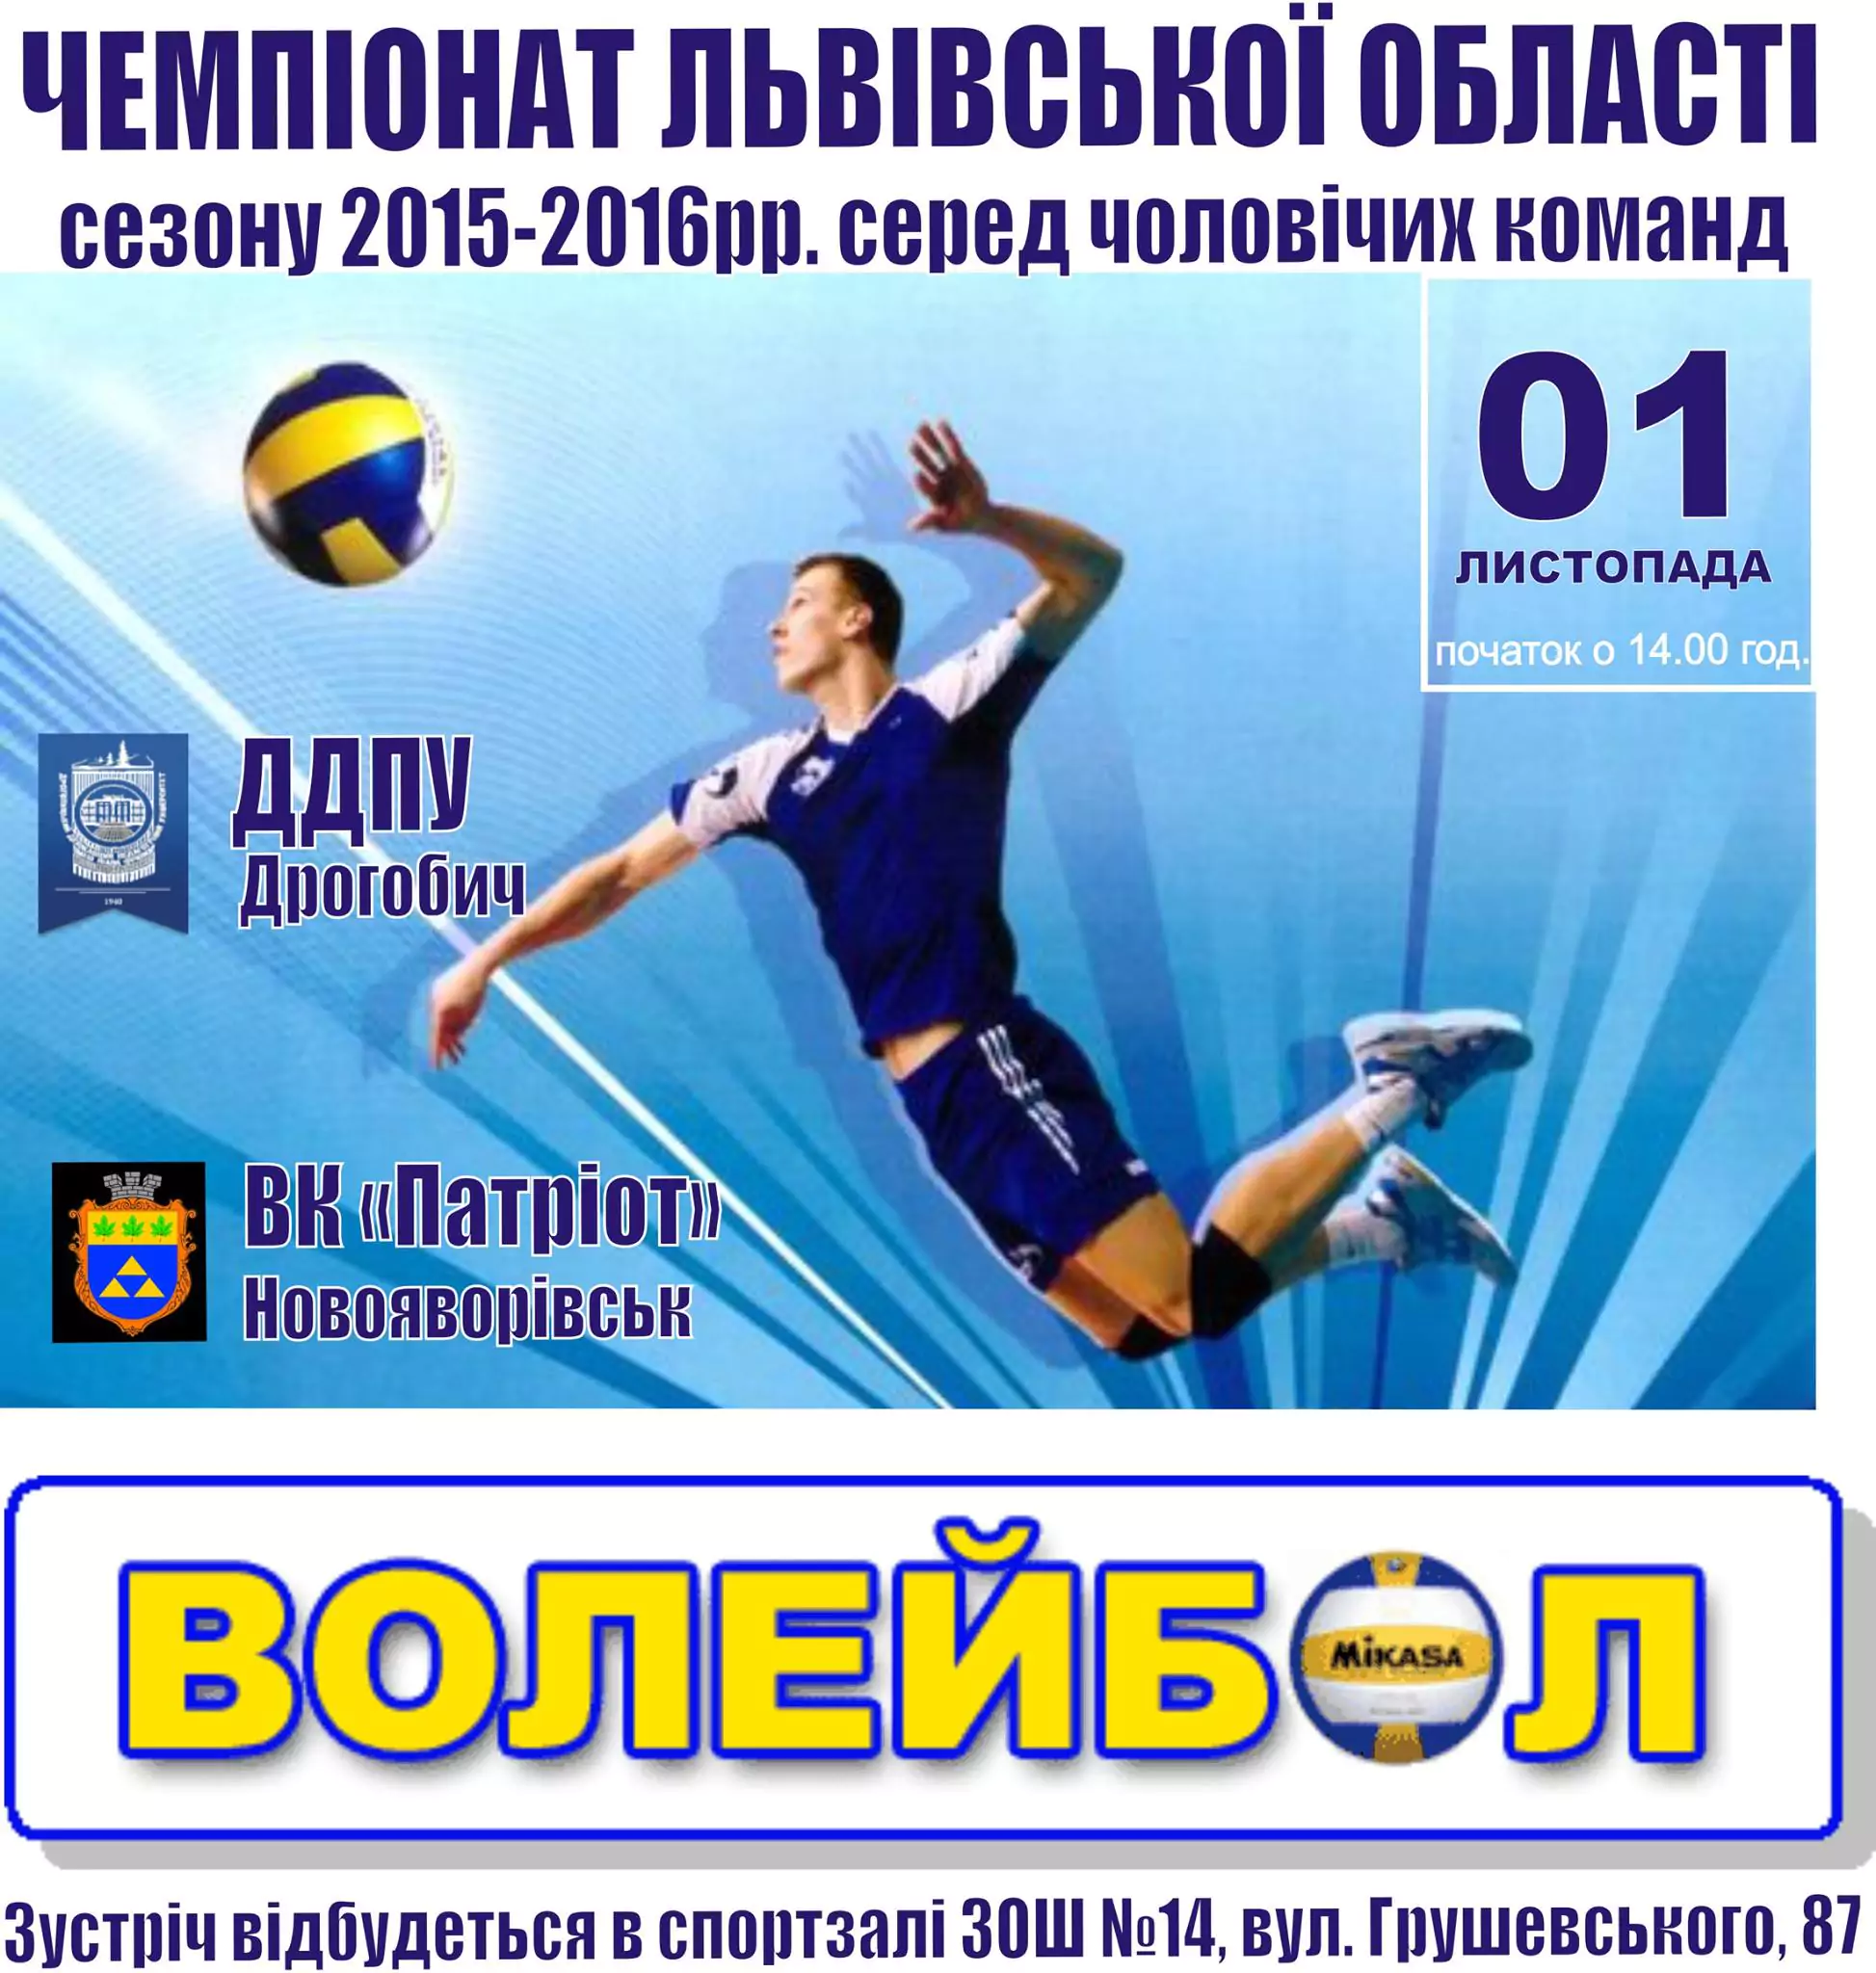 1 листопада відбудеться Чемпіонат Львівської області з волейболу сезону 2015-2016рр.